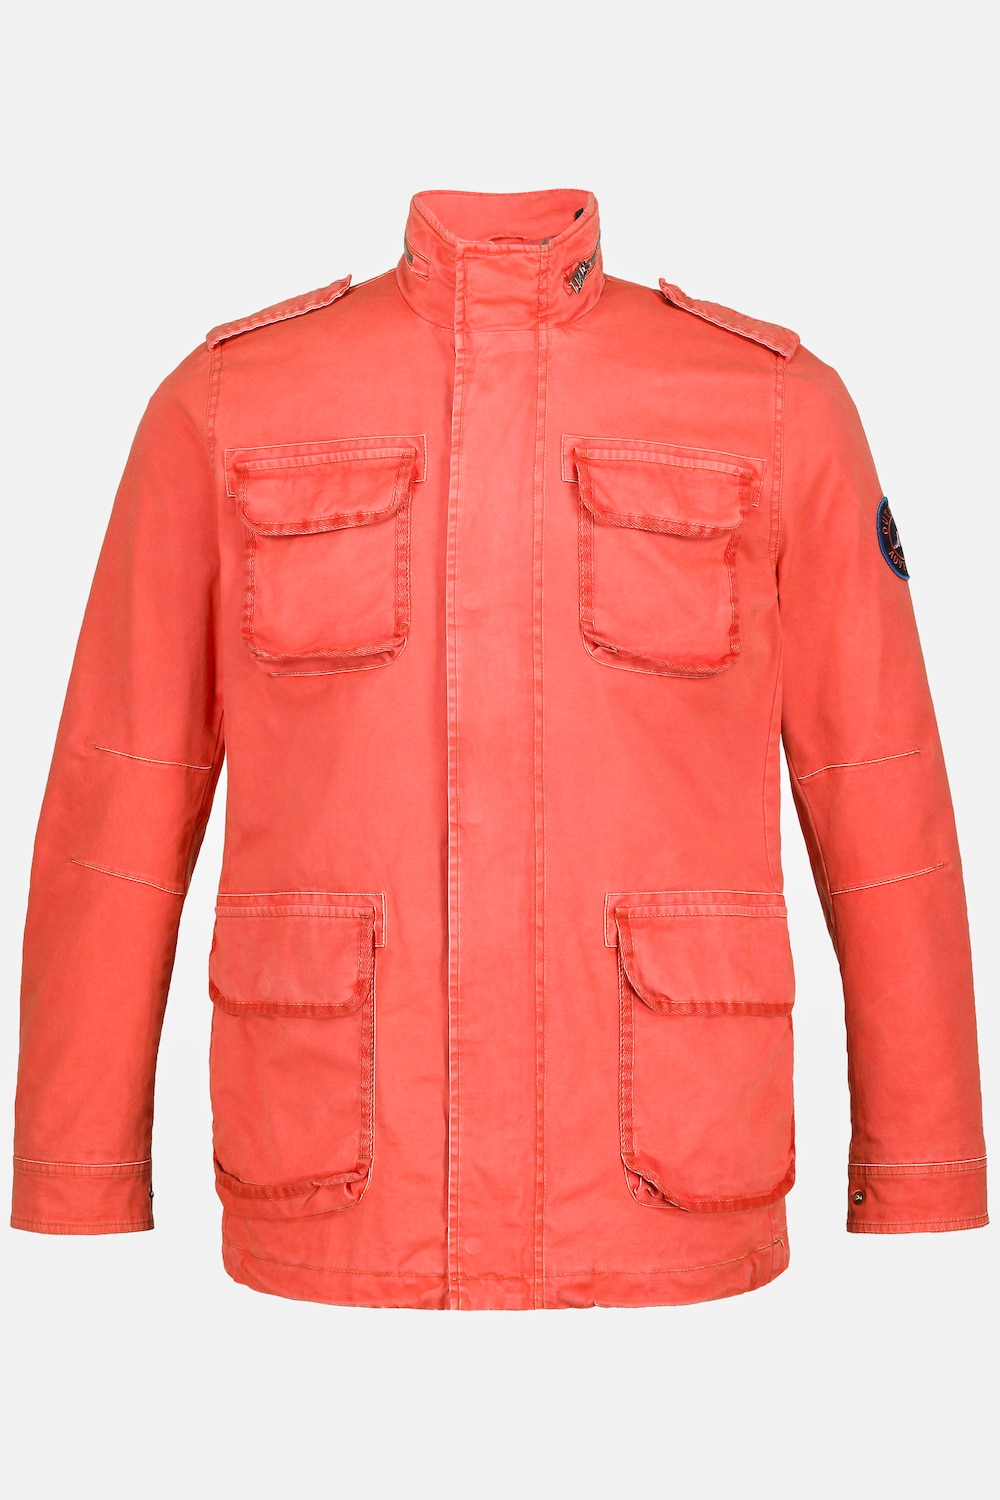 Fieldjacket, Große Größen, Herren, orange, Größe: XL, Polyester/Baumwolle, JP1880